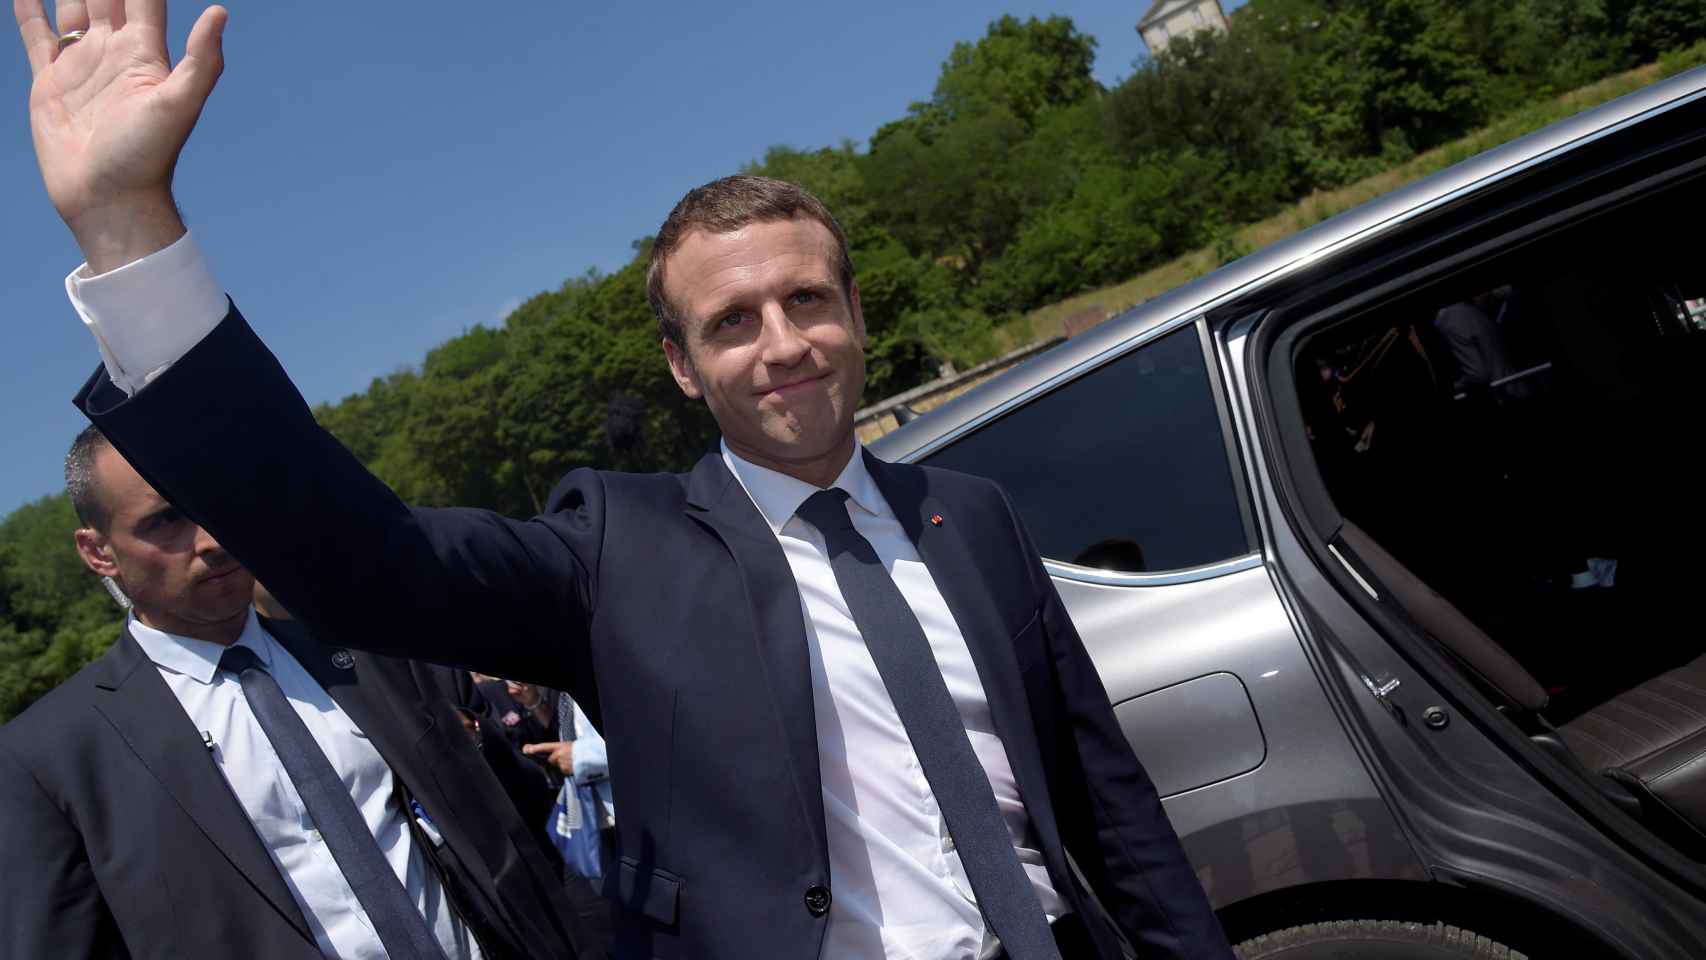 Macron dará un discurso al Parlamento este lunes en Versalles